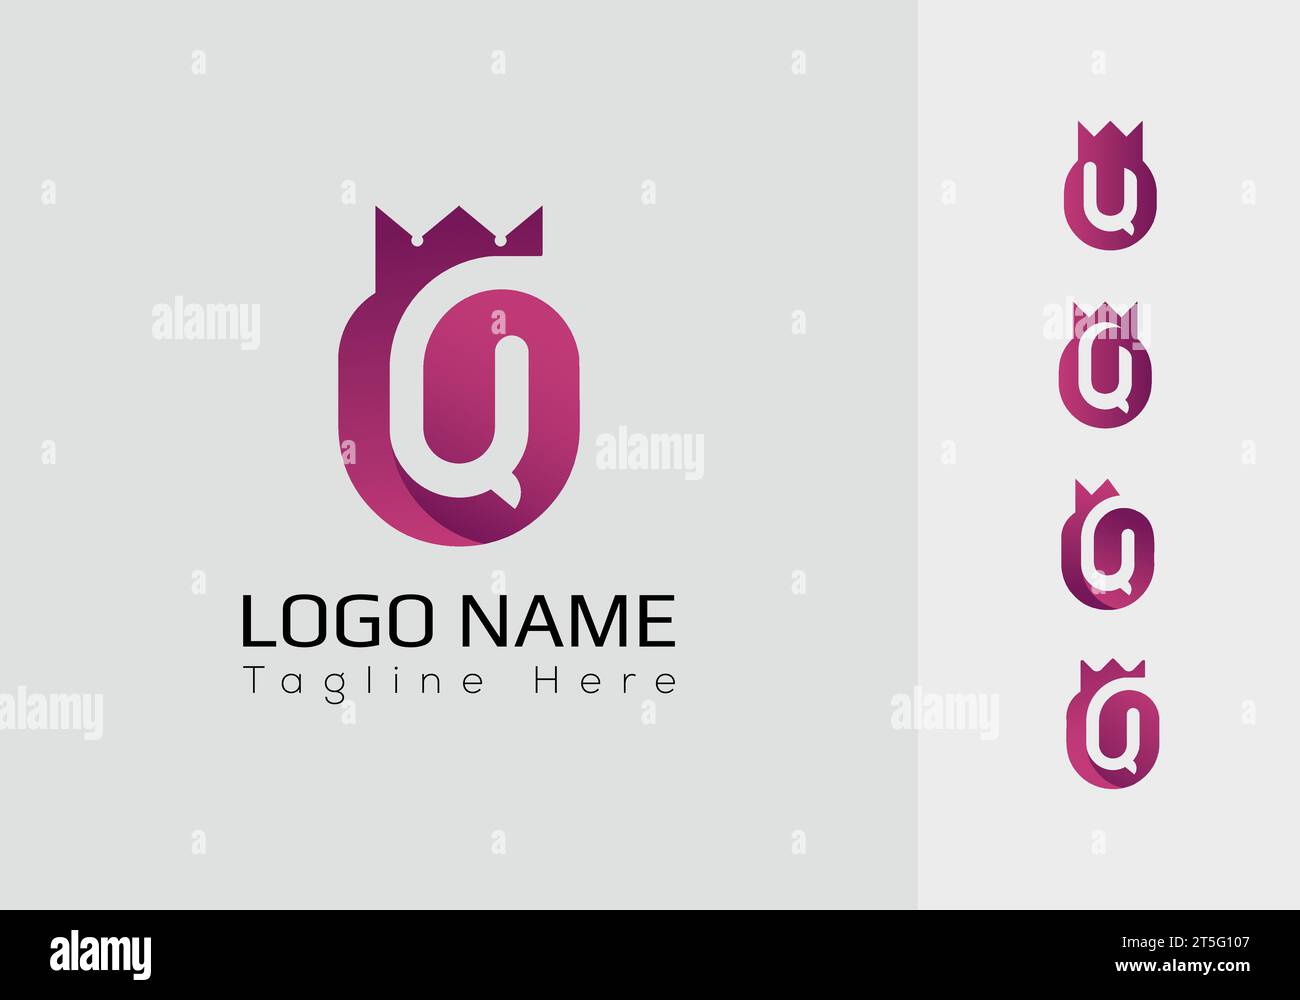 Q Design del logo. E' minimalista, moderno, elegante e dal design semplice. adatto per il digitale, società di partnership, società, fondazioni, tecnologia, ecc. Illustrazione Vettoriale